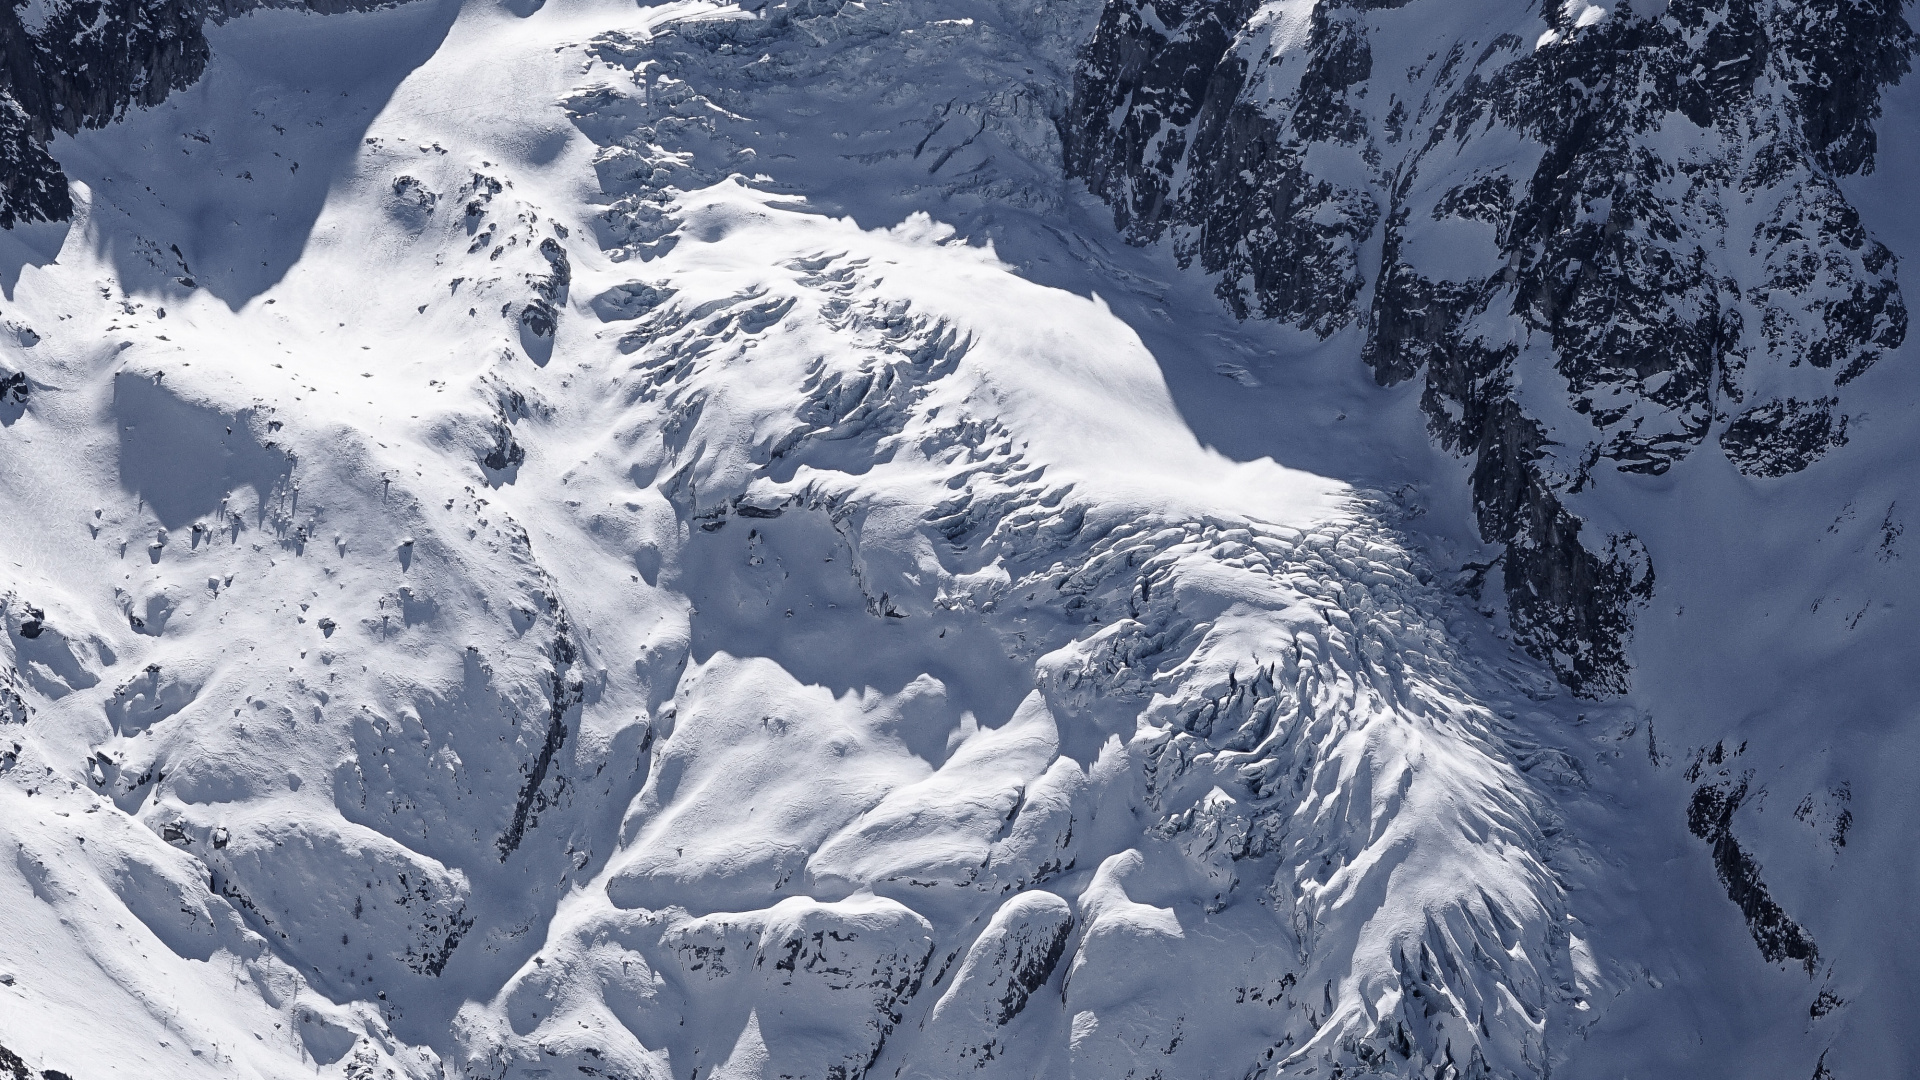 Las Formaciones Montañosas, Montaña, Glaciar de Terreno, Macizo, Alpes. Wallpaper in 1920x1080 Resolution